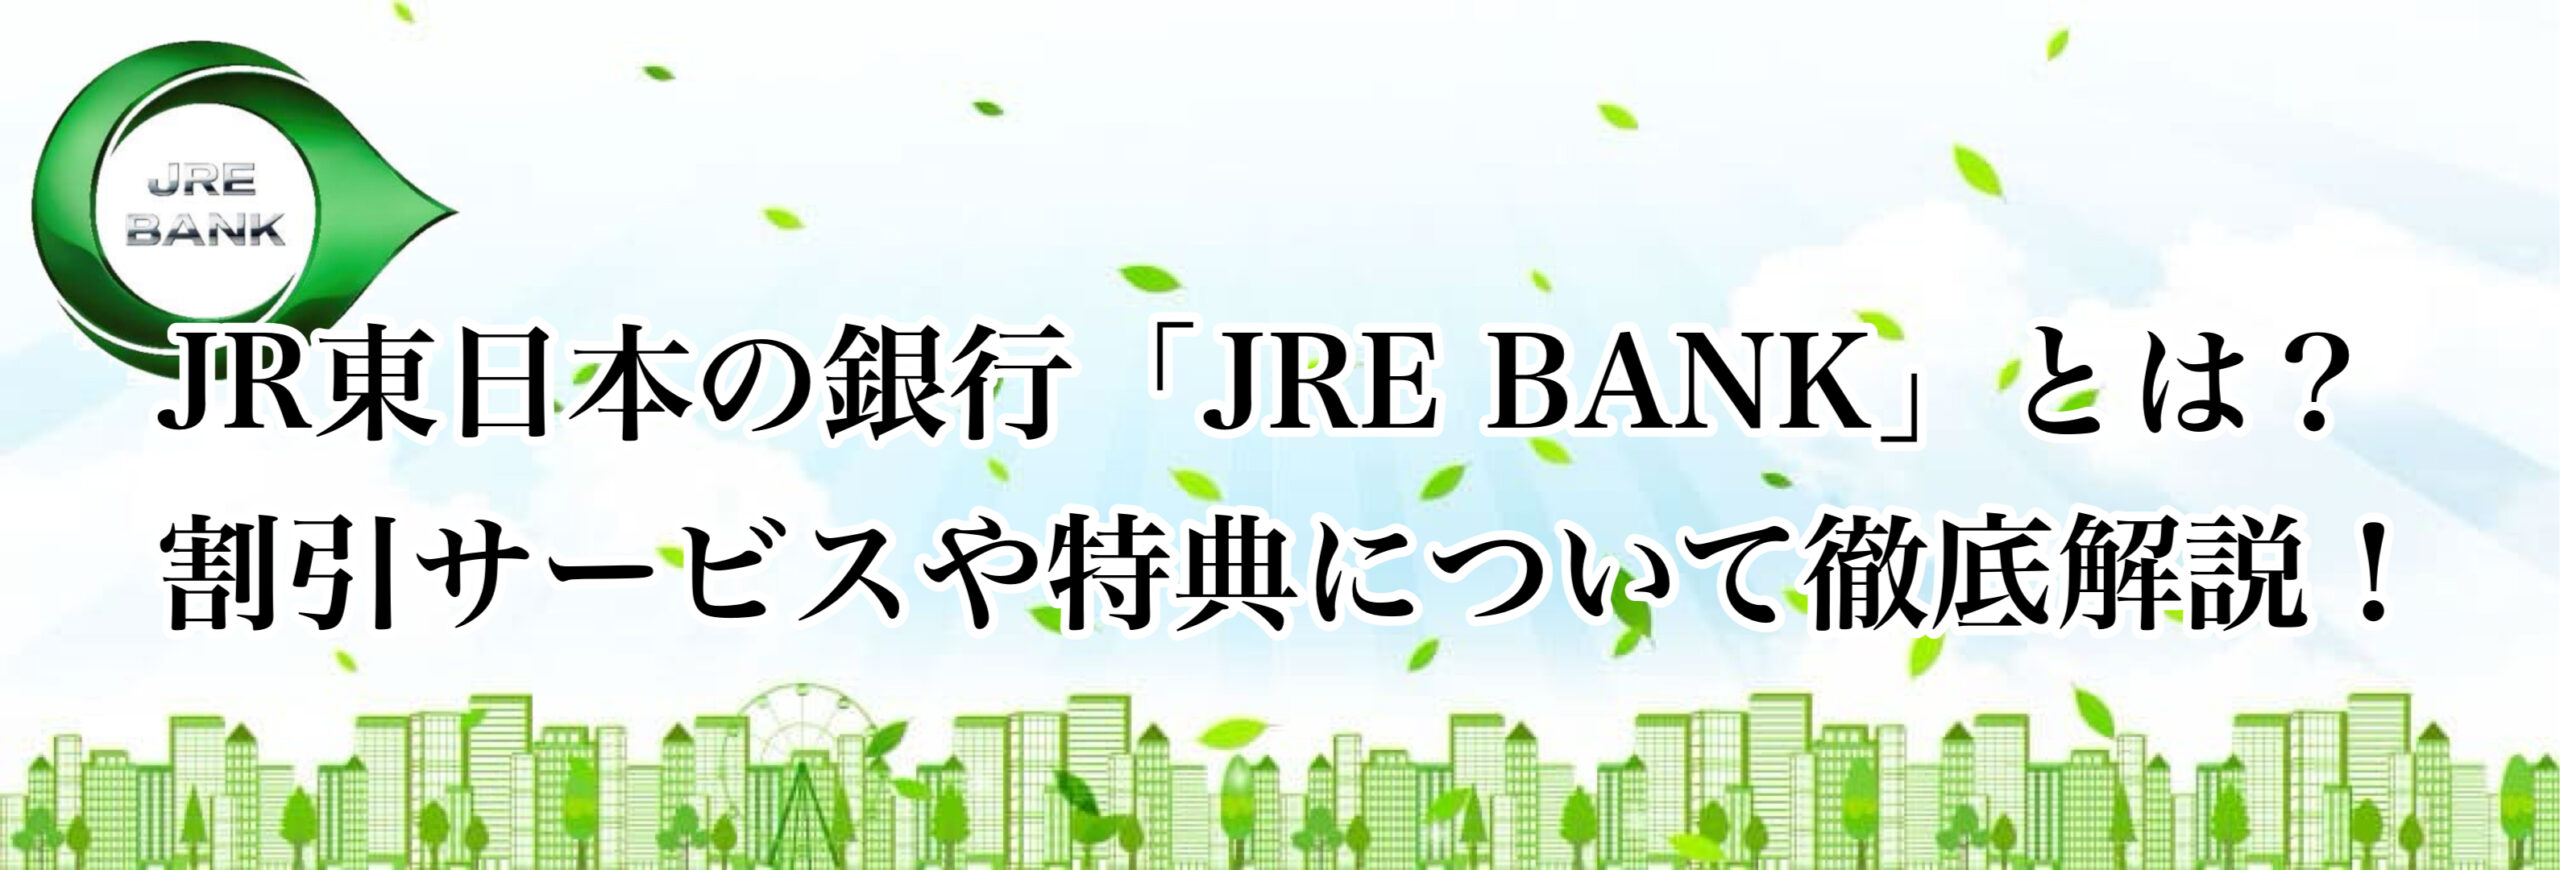 JR東日本の銀行「JRE BANK」とは？ 割引サービスや特典について徹底解説！